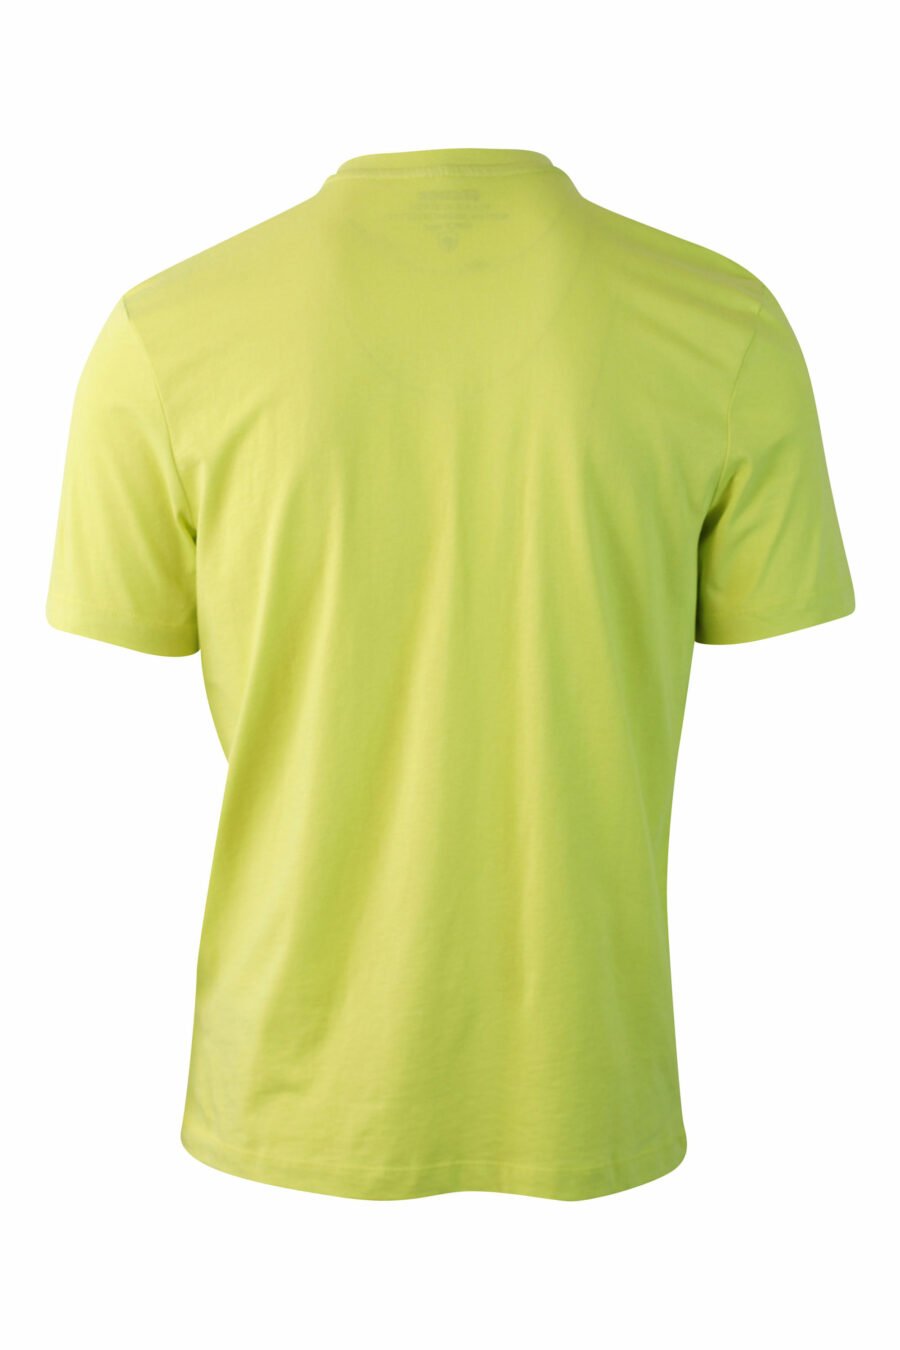 Camiseta verde lima con maxilogo monocromático - IMG 0074 1